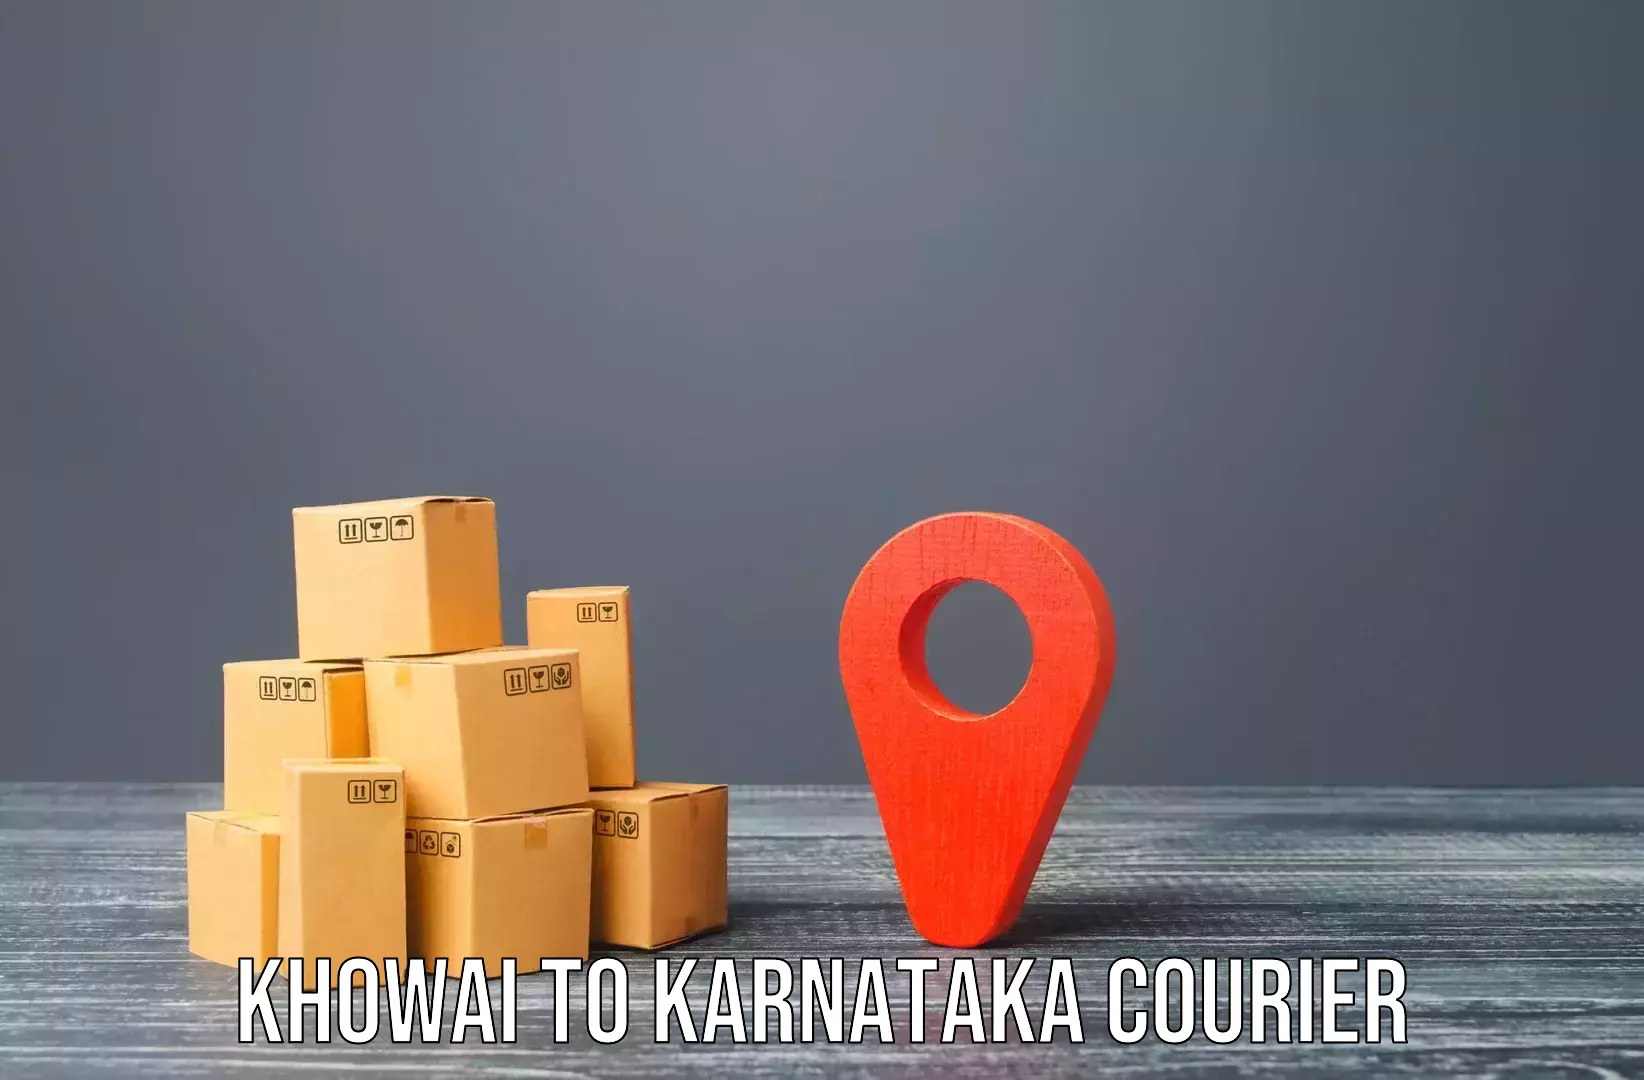 Furniture transport experts Khowai to Karnataka